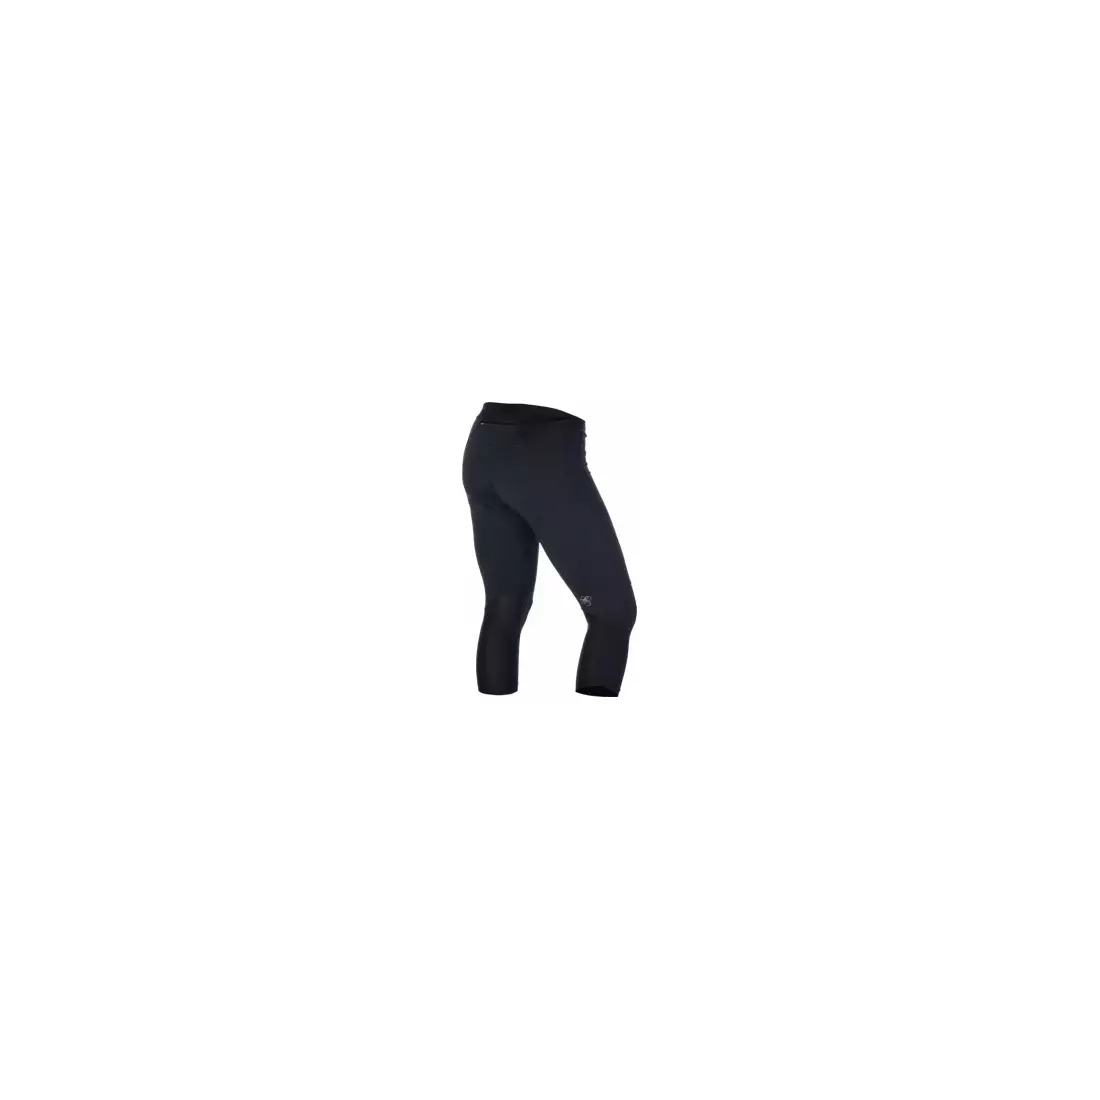 ASICS RUN 100064-0904 - women's 3/4 shorts, color: Black